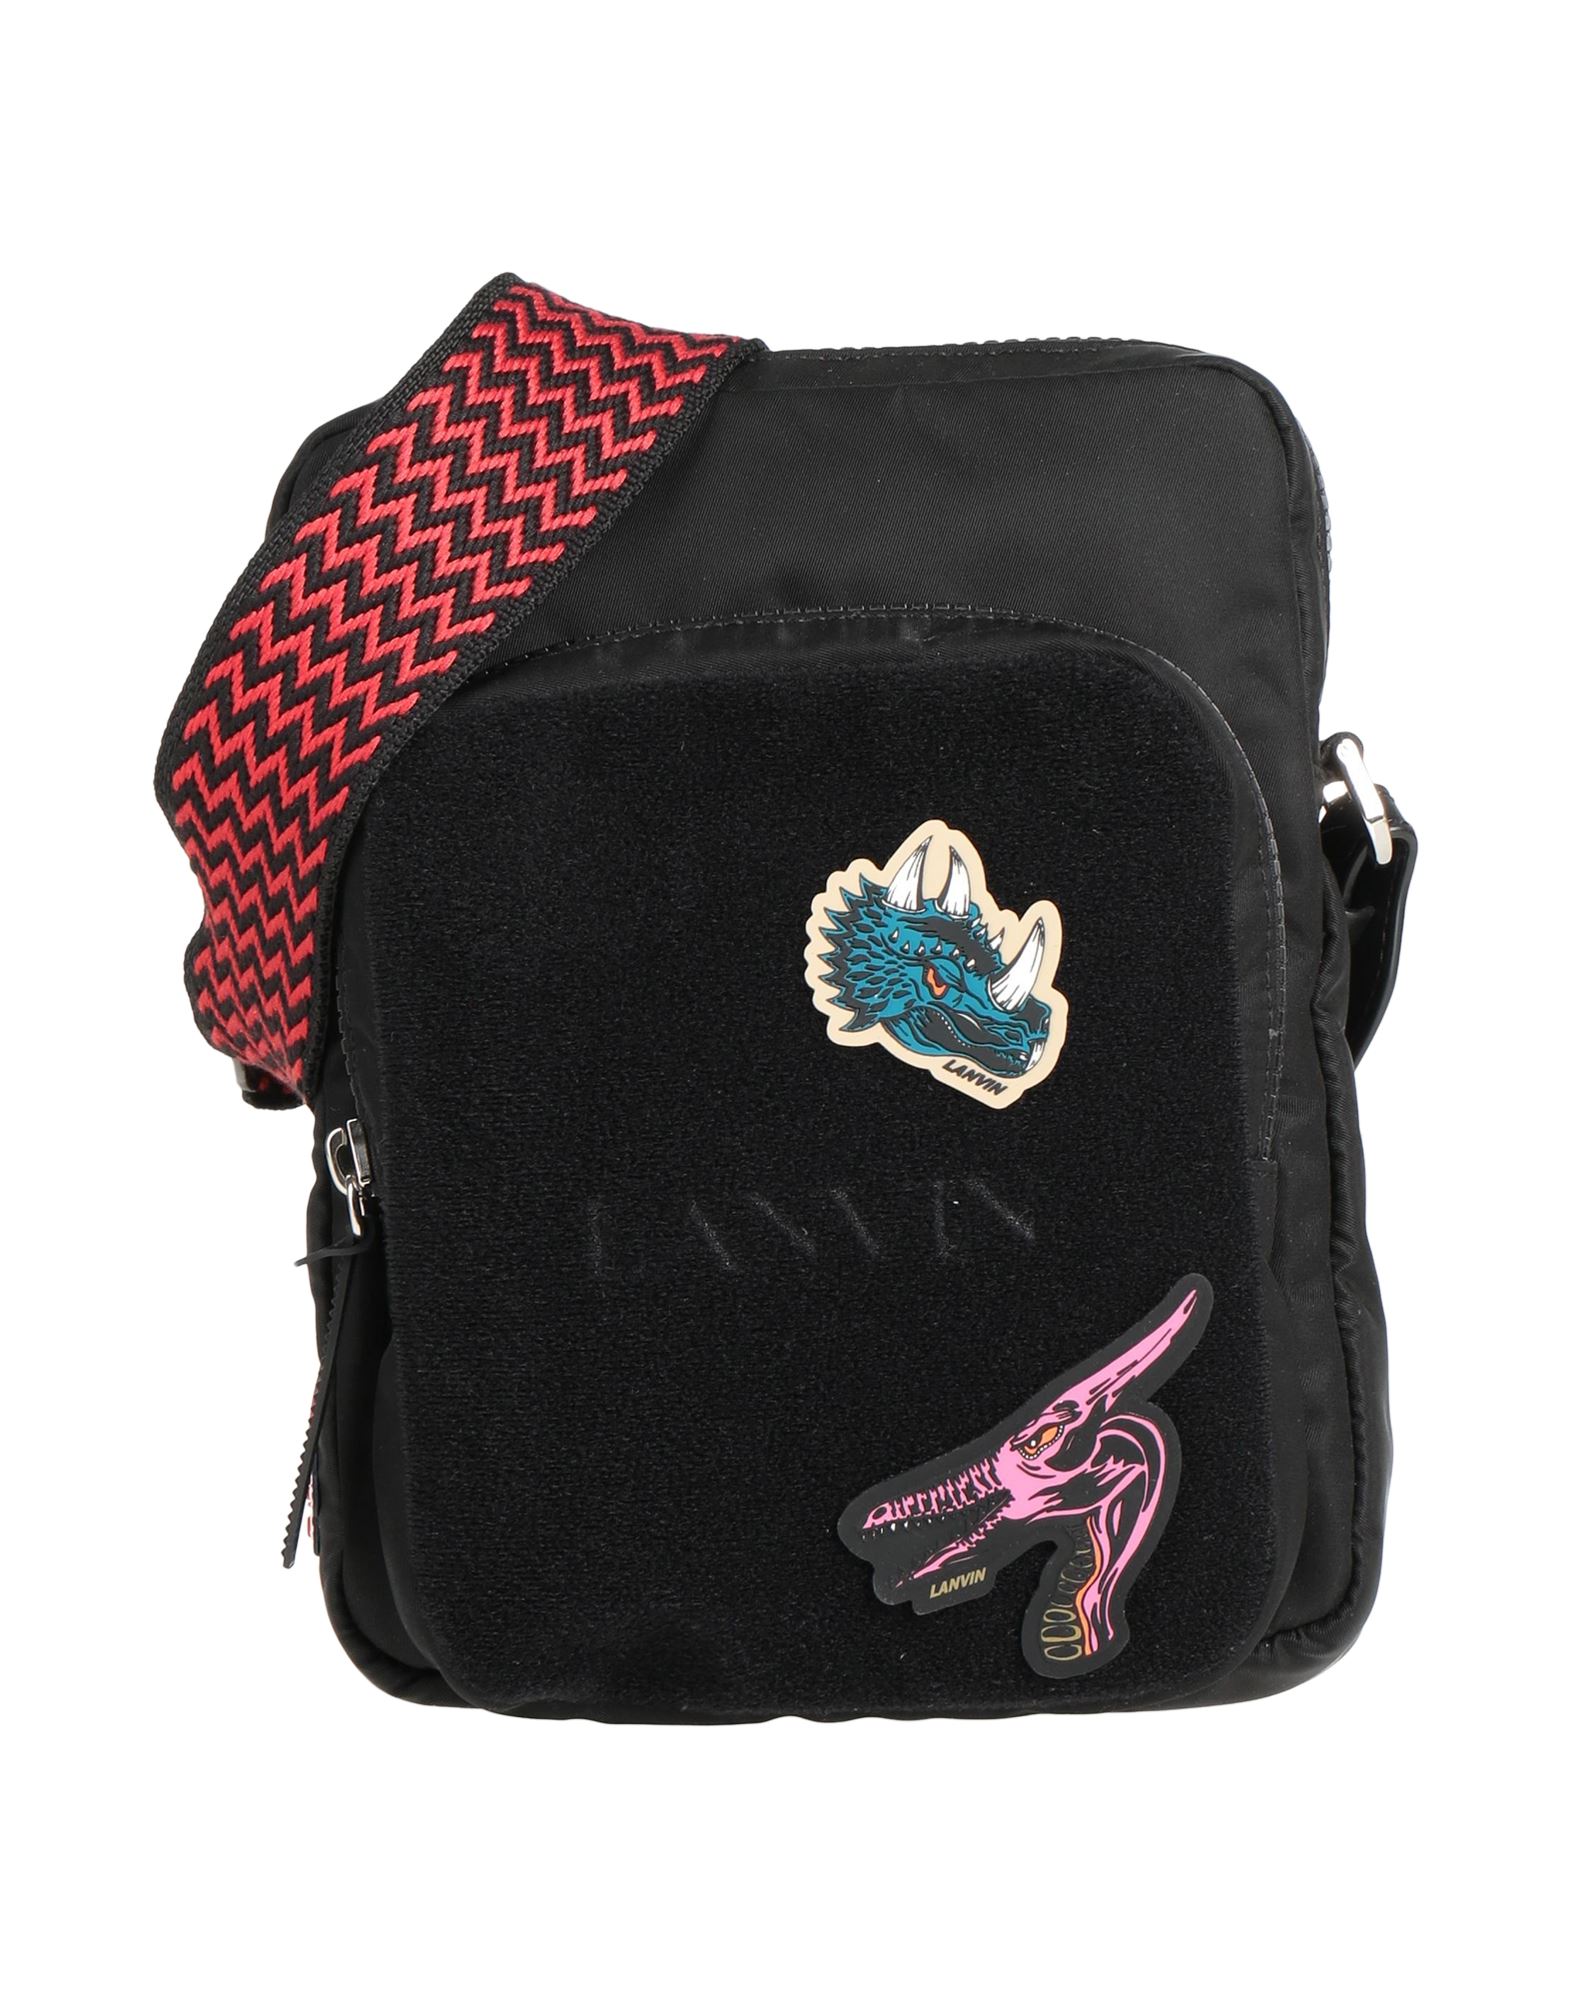 LANVIN Bags for Men | ModeSens